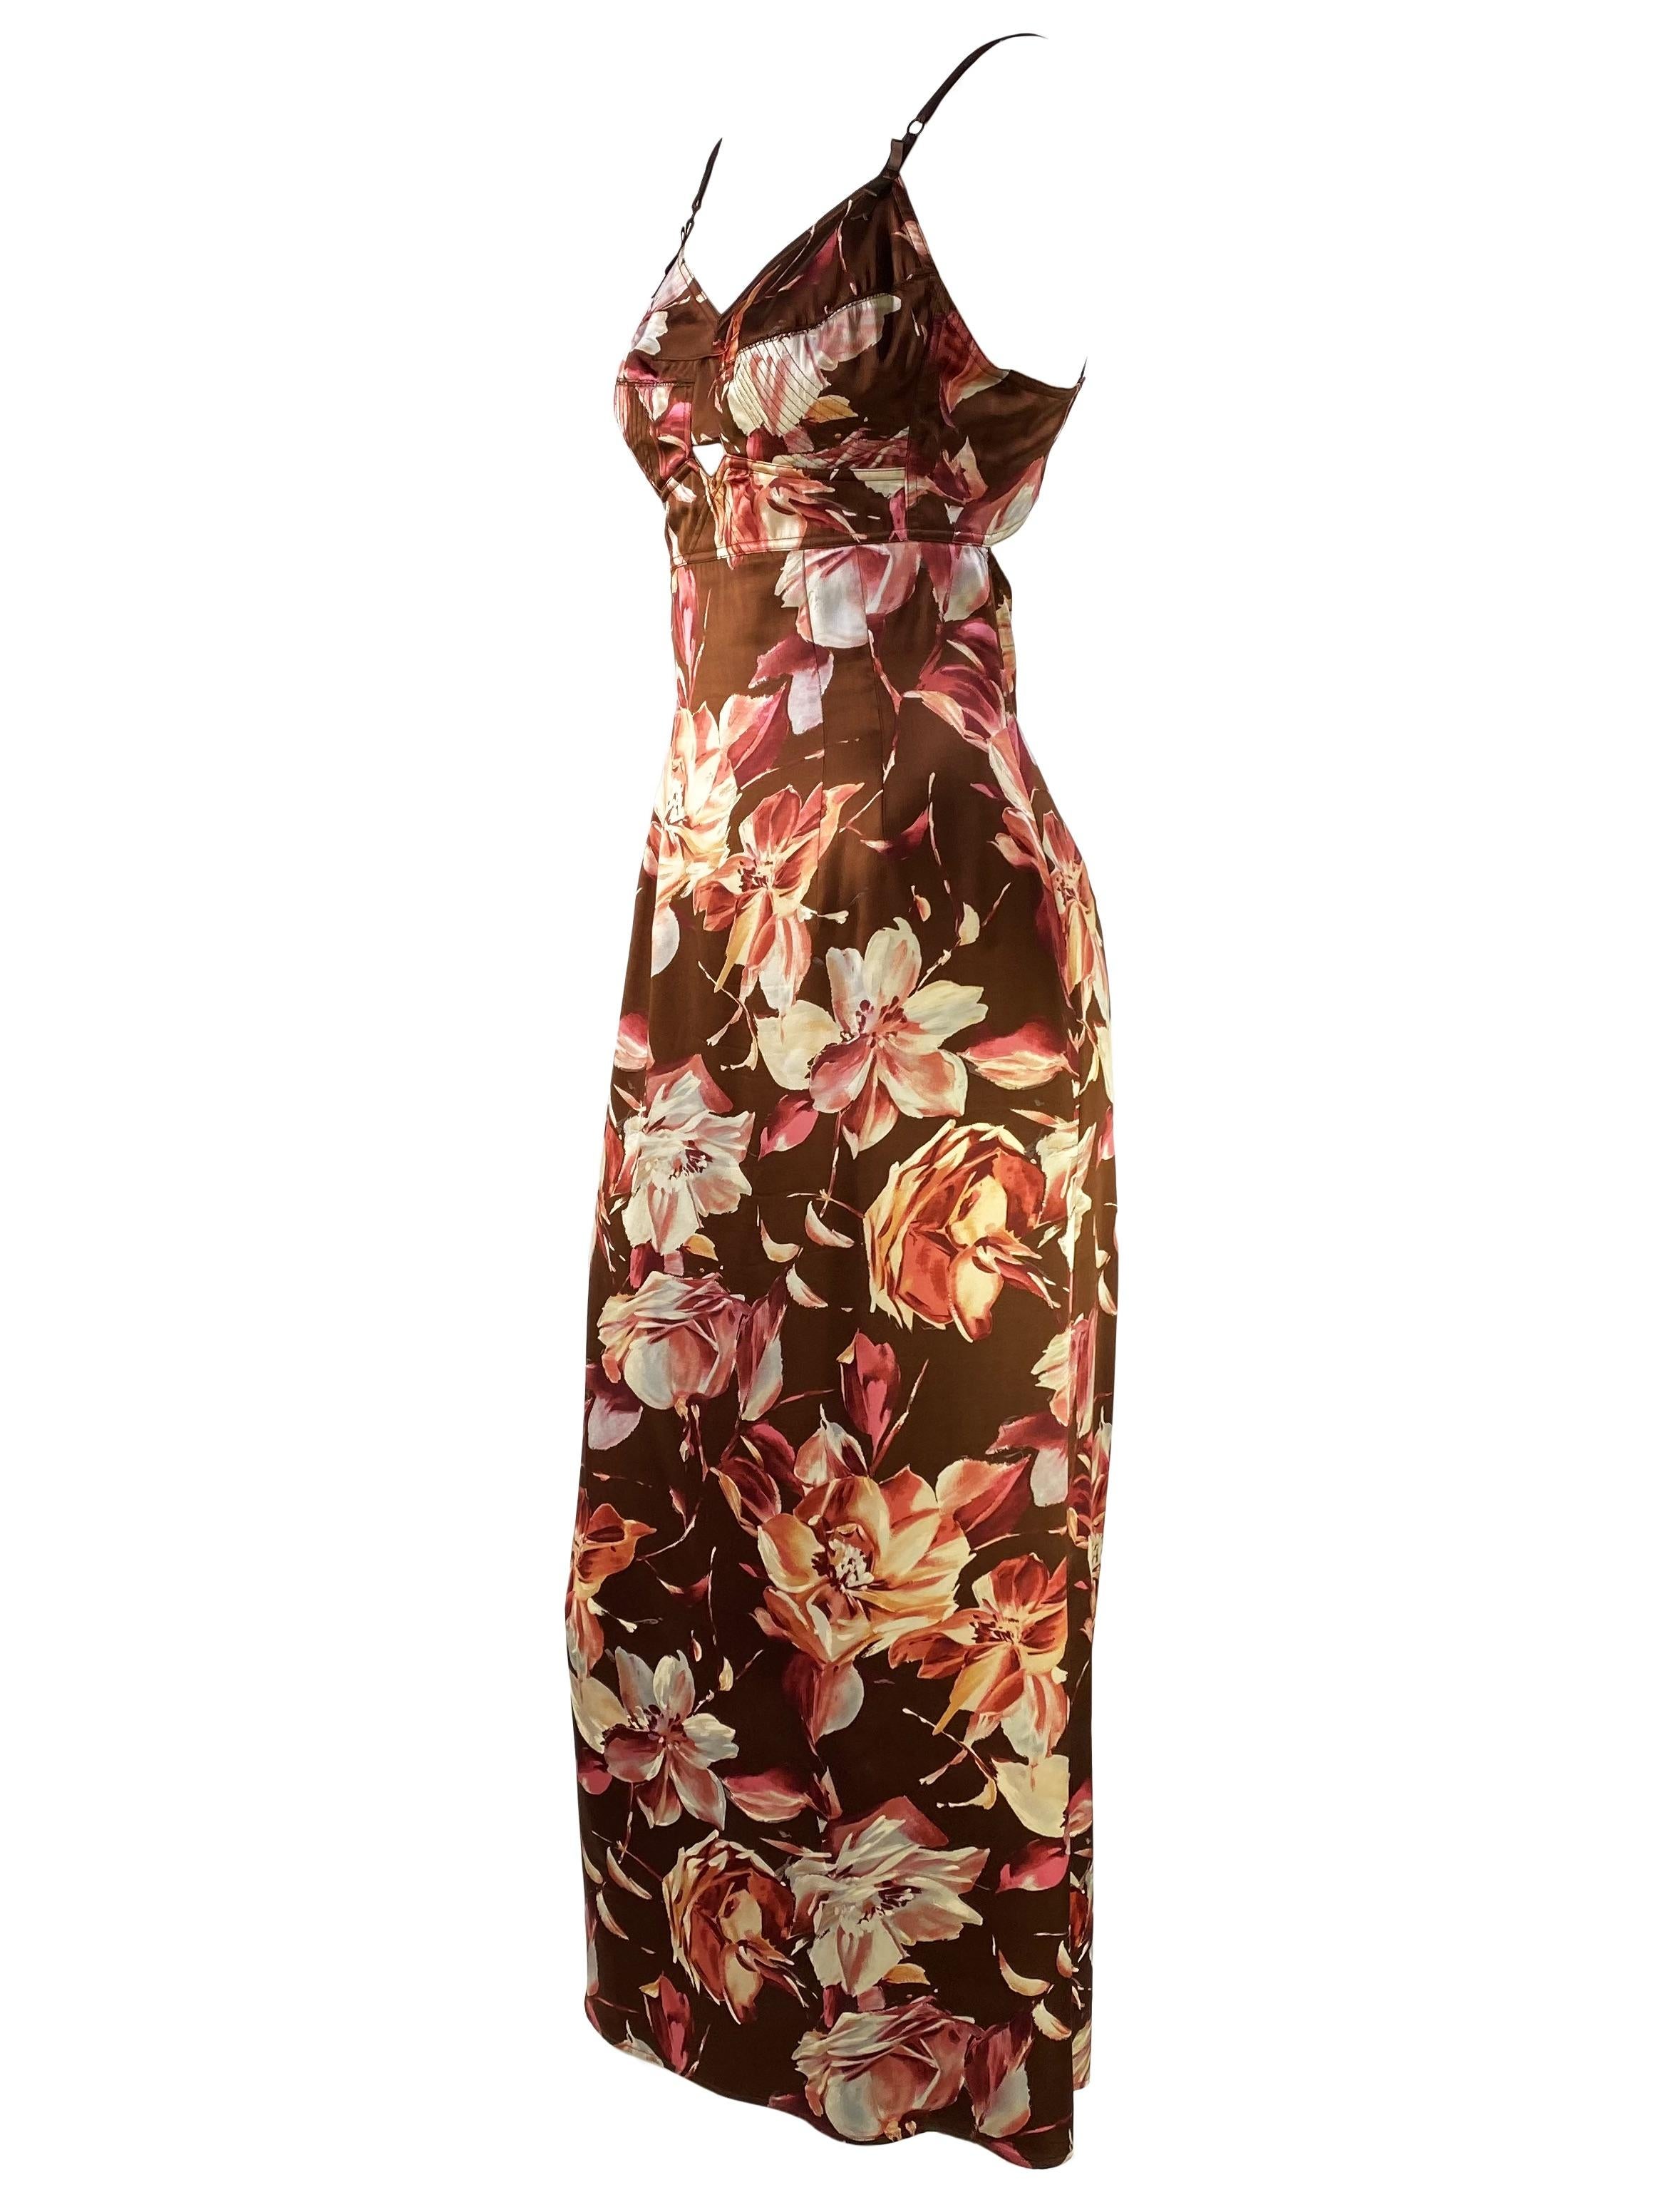 Nous vous présentons une superbe robe sablier Dolce & Gabbana en satin de soie fleuri, issue de la collection printemps-été 1997. Cette robe a fait ses débuts lors de la présentation du défilé dans plusieurs modèles de tissus floraux similaires. Une